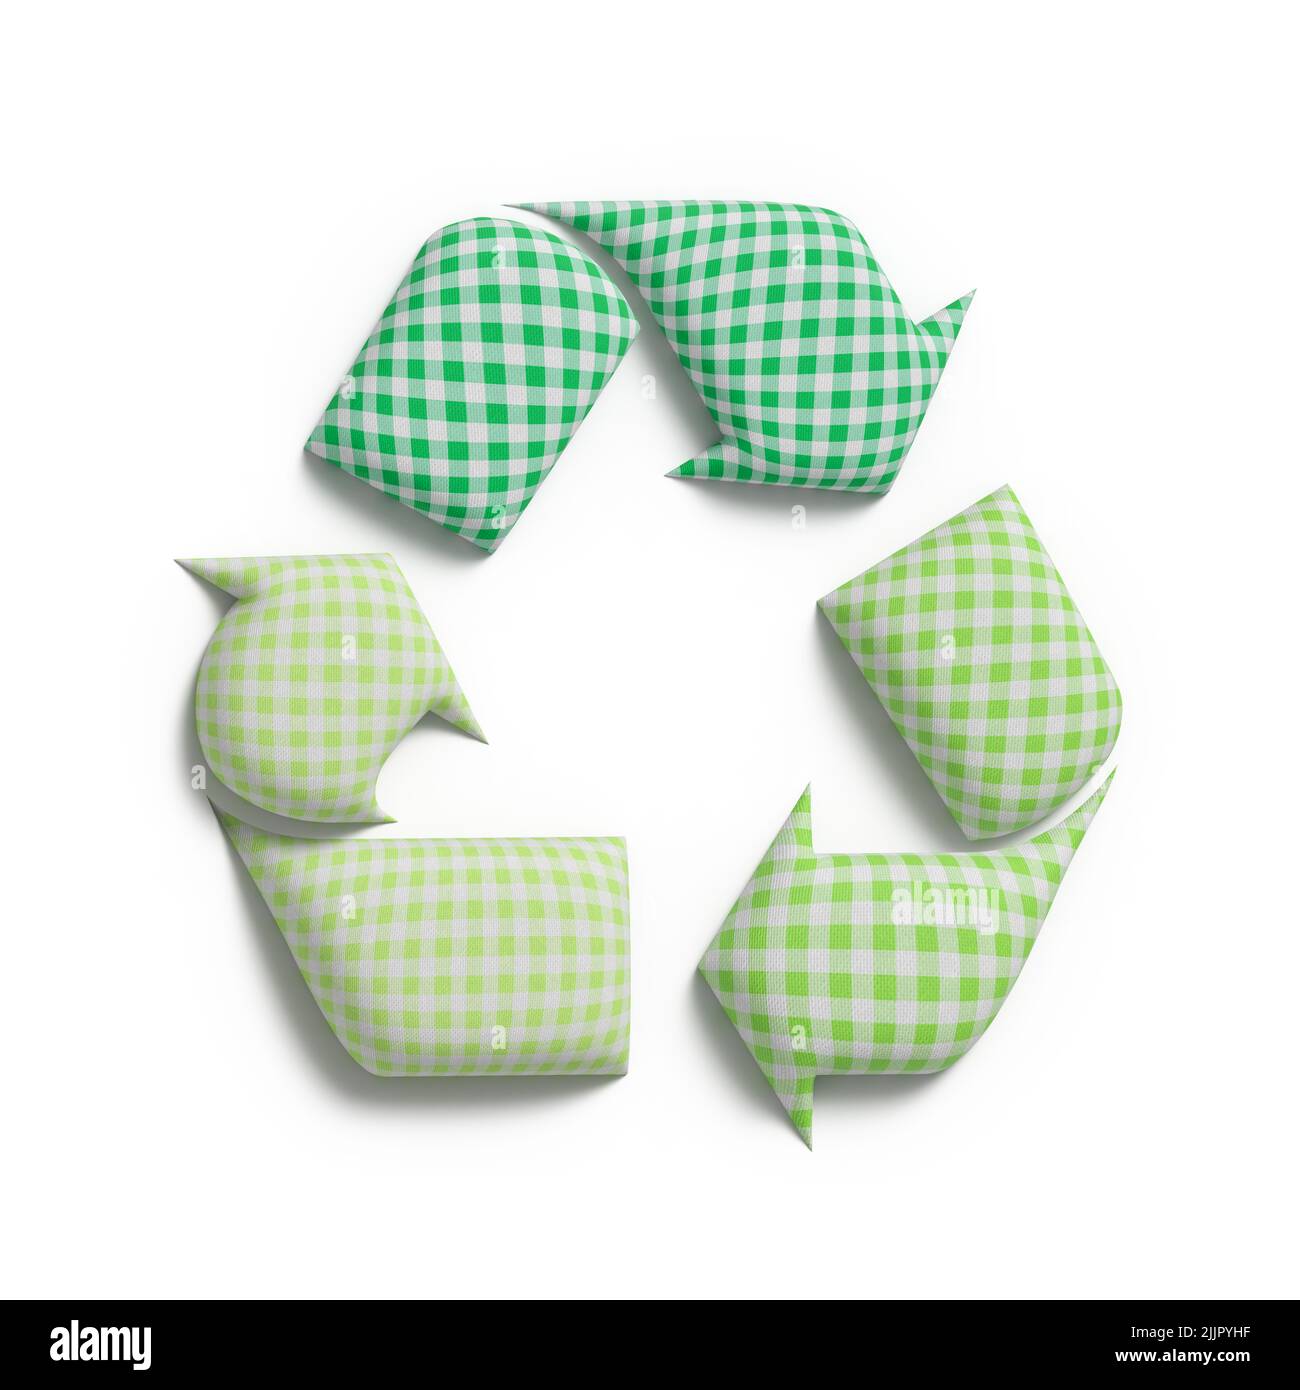 Recyceln Sie Textilien, recyceln Sie Symbole mit recyceltem Stoff, reduzieren Sie Textilabfälle und fördern Sie nachhaltige Mode Stockfoto